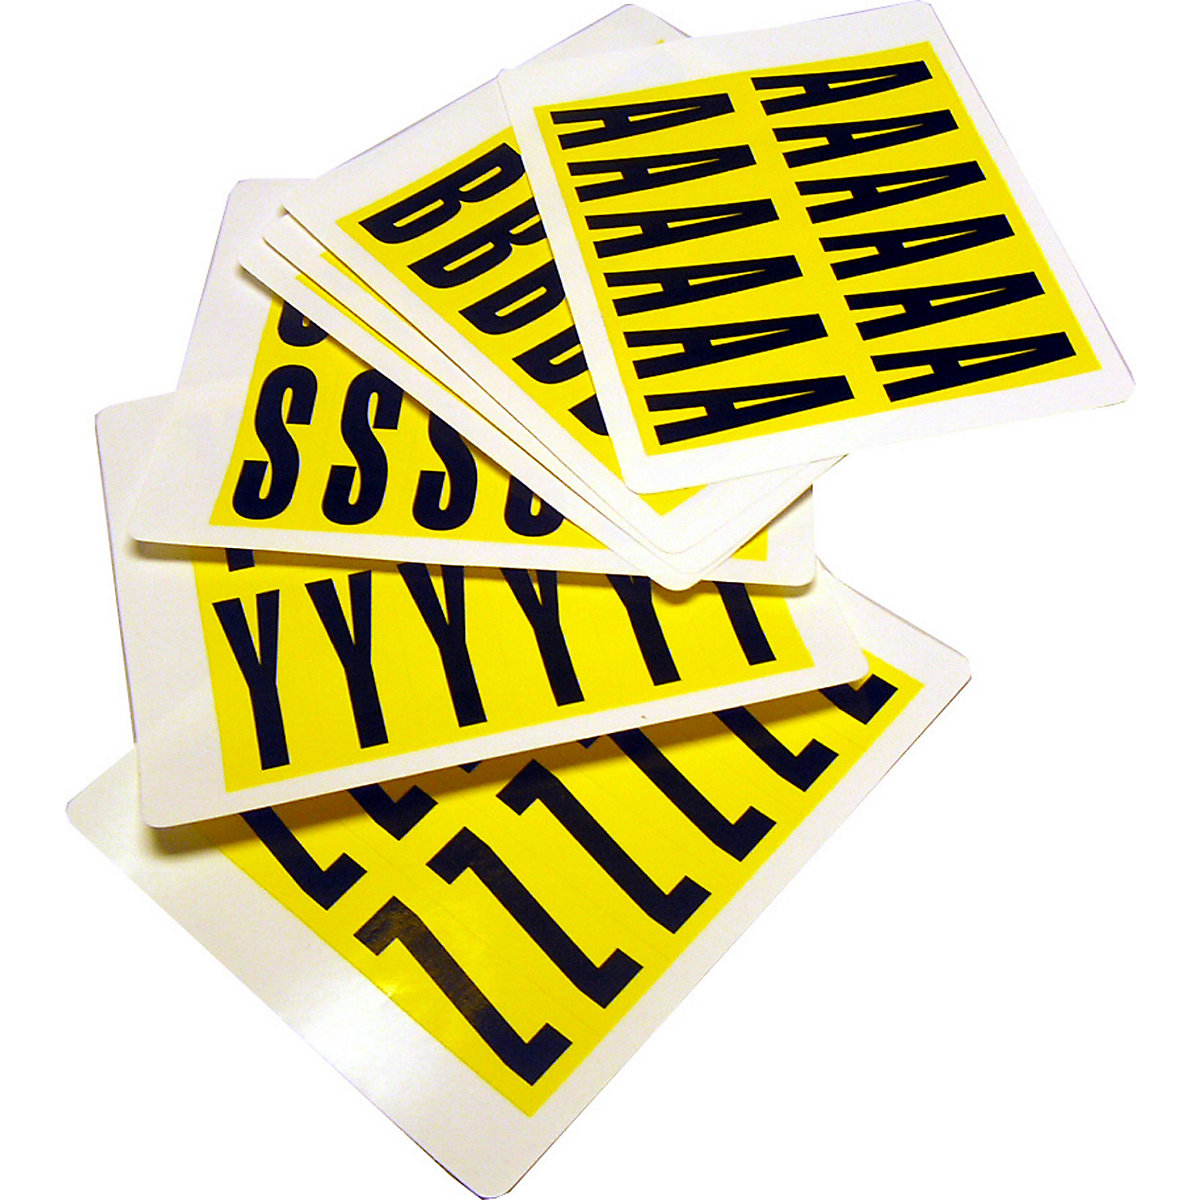 Lettertekenset, h x b = 56 x 21 mm, plakletters A – Z, 26 kaarten-5